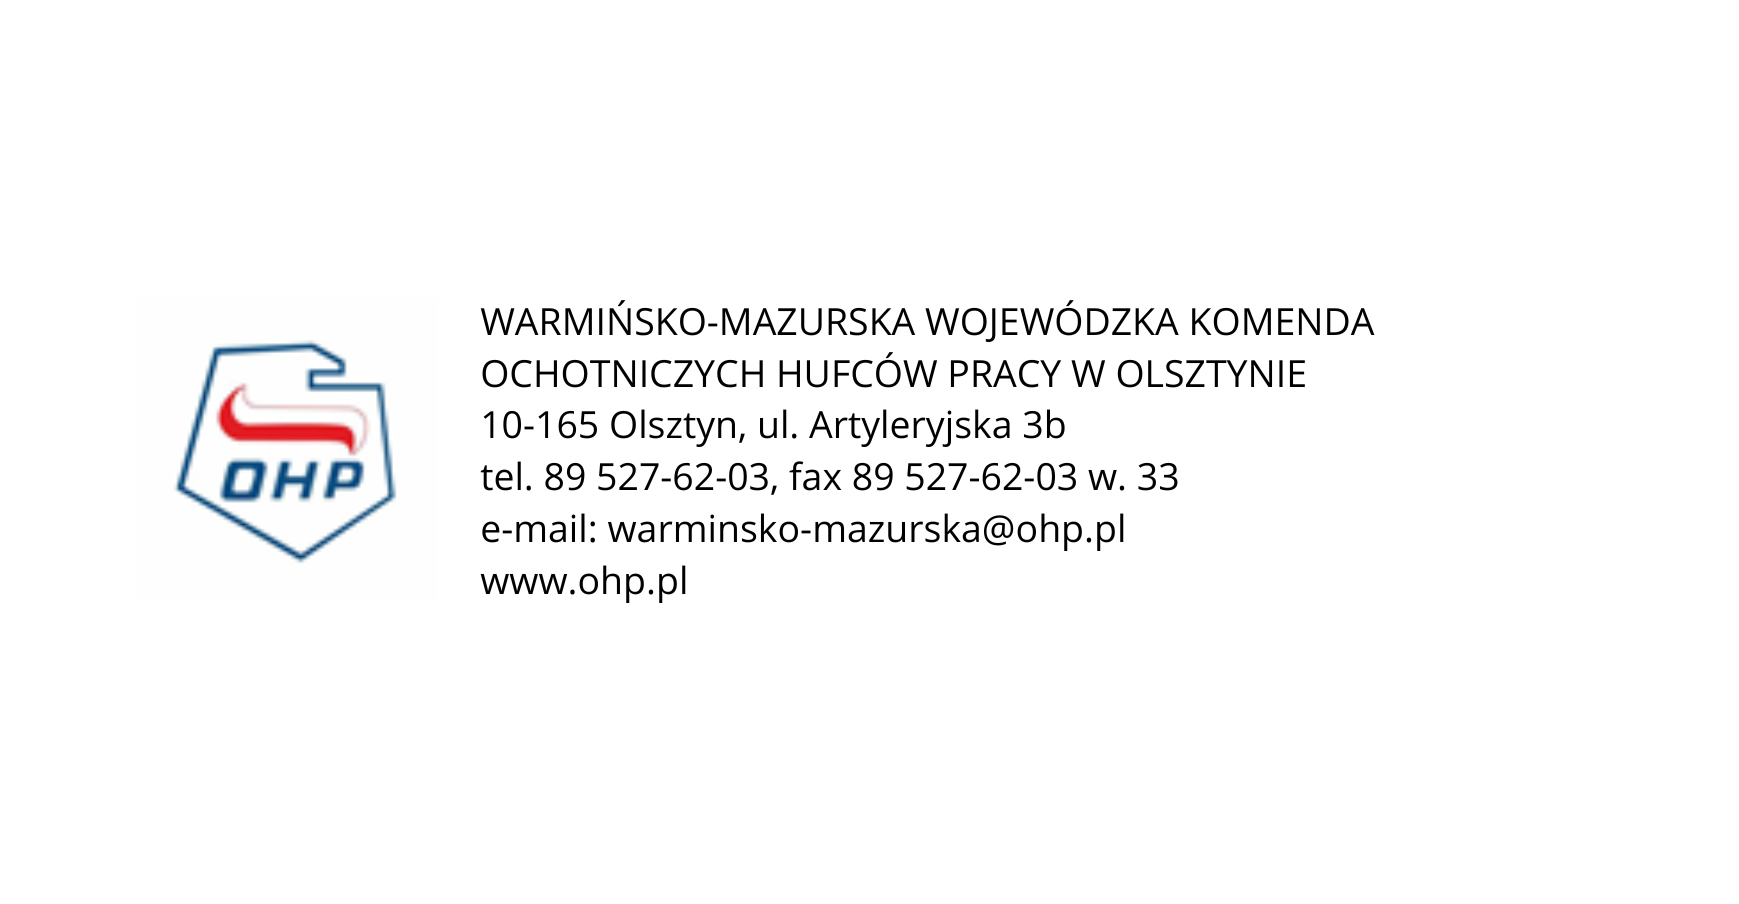 Warmińsko-Mazurska Wojewódzka Komenda OHP w Olsztynie